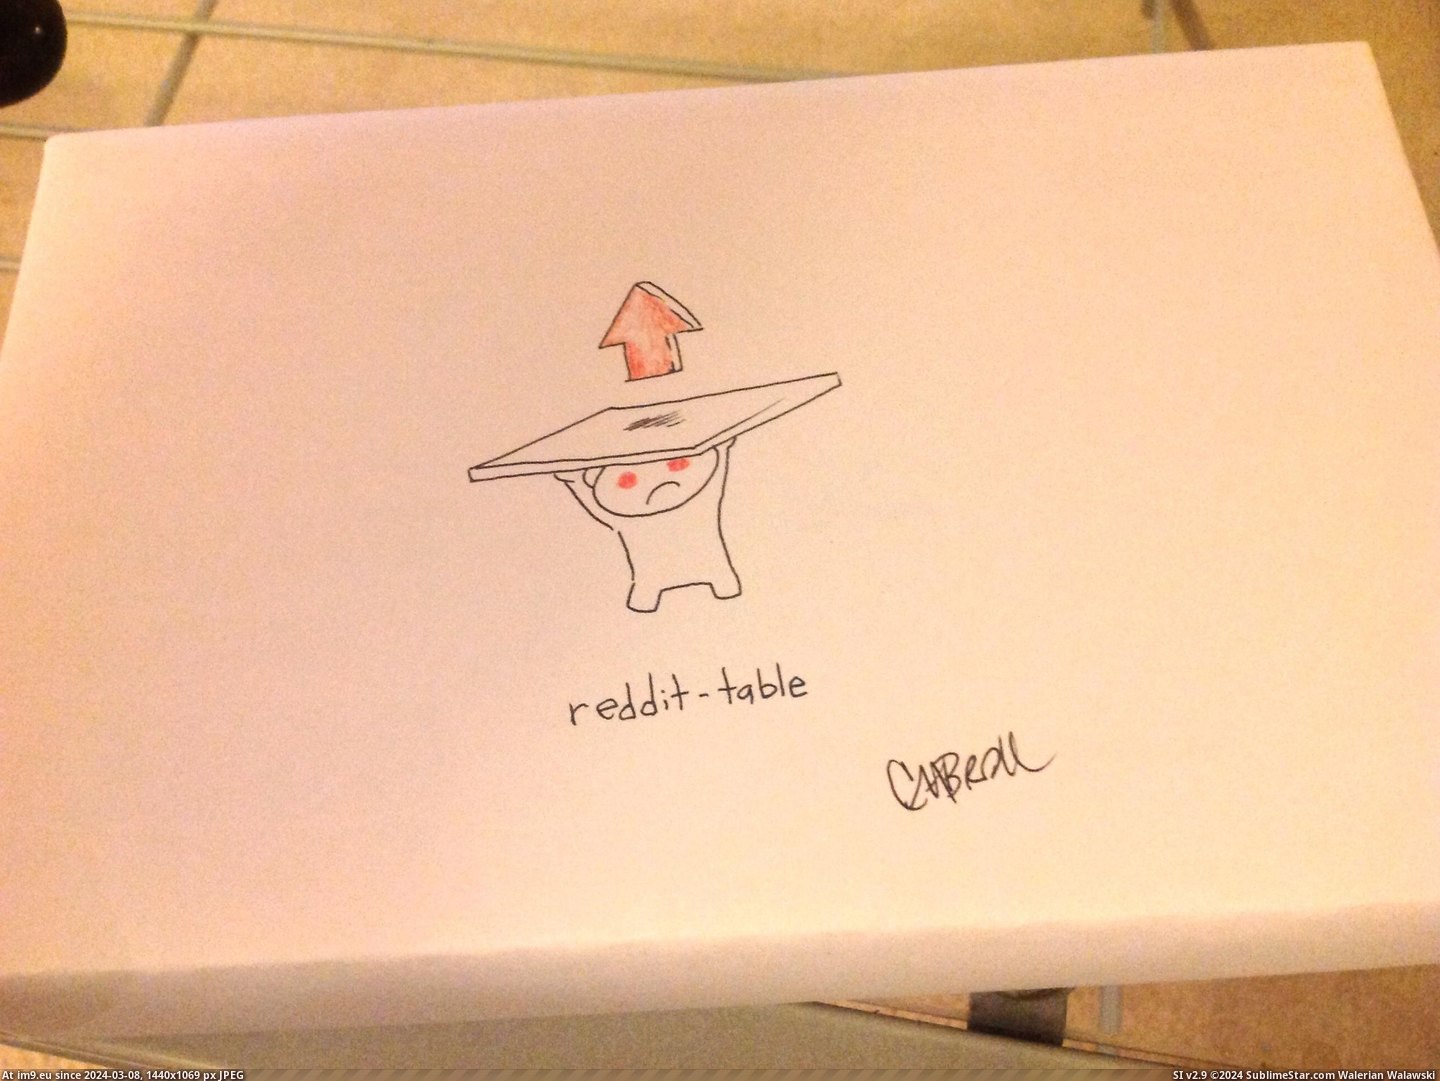 #Box #Redditable #Draw [Pics] 'Please draw something redditable on the box' 2 Pic. (Image of album My r/PICS favs))